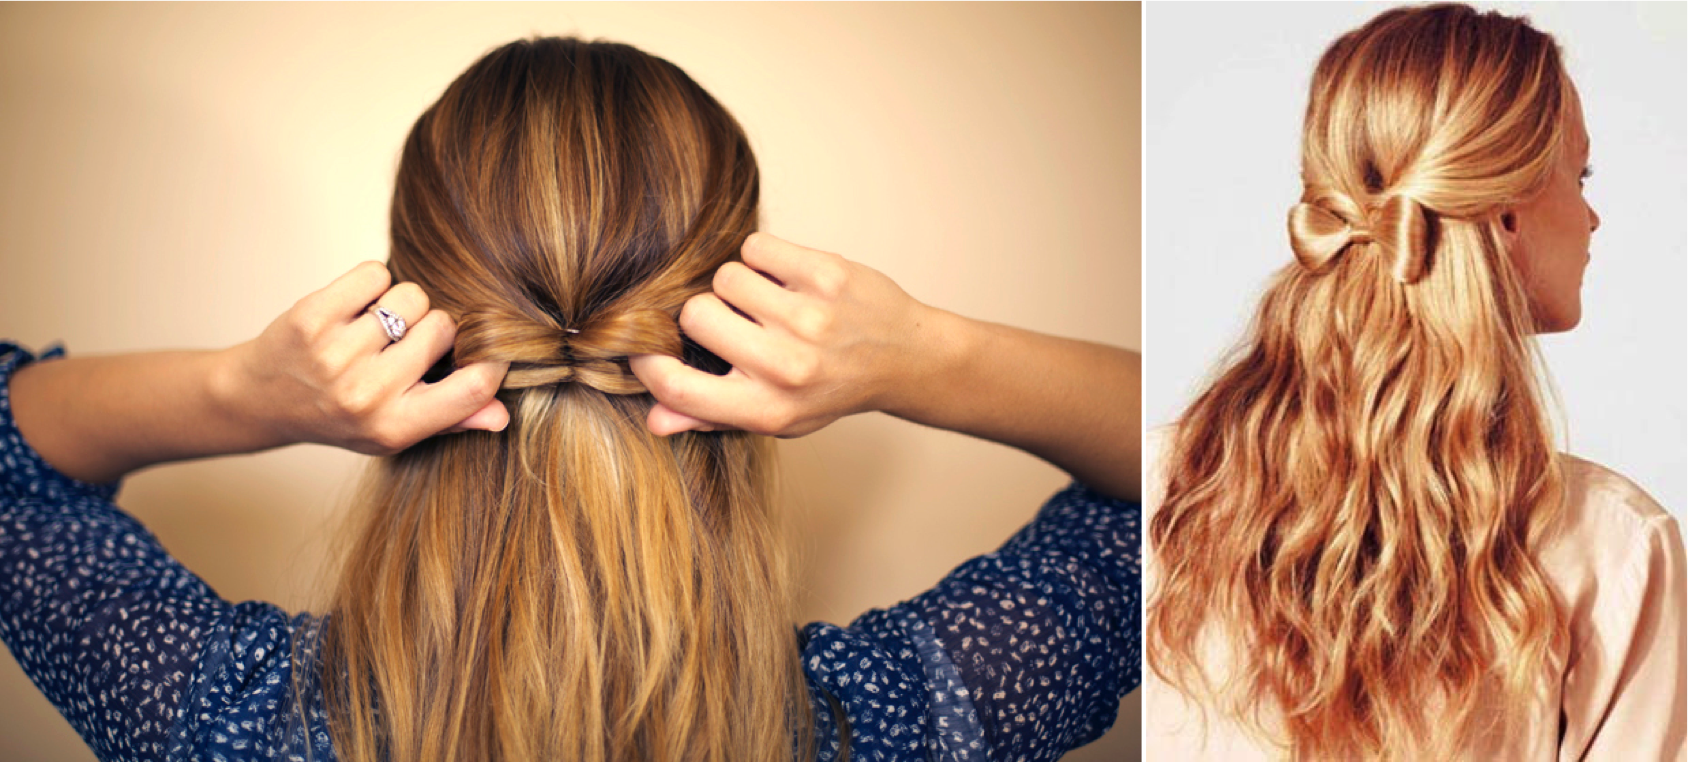 Movimiento bostezando espalda Peinados para el pelo ondulado | Blog de DIA